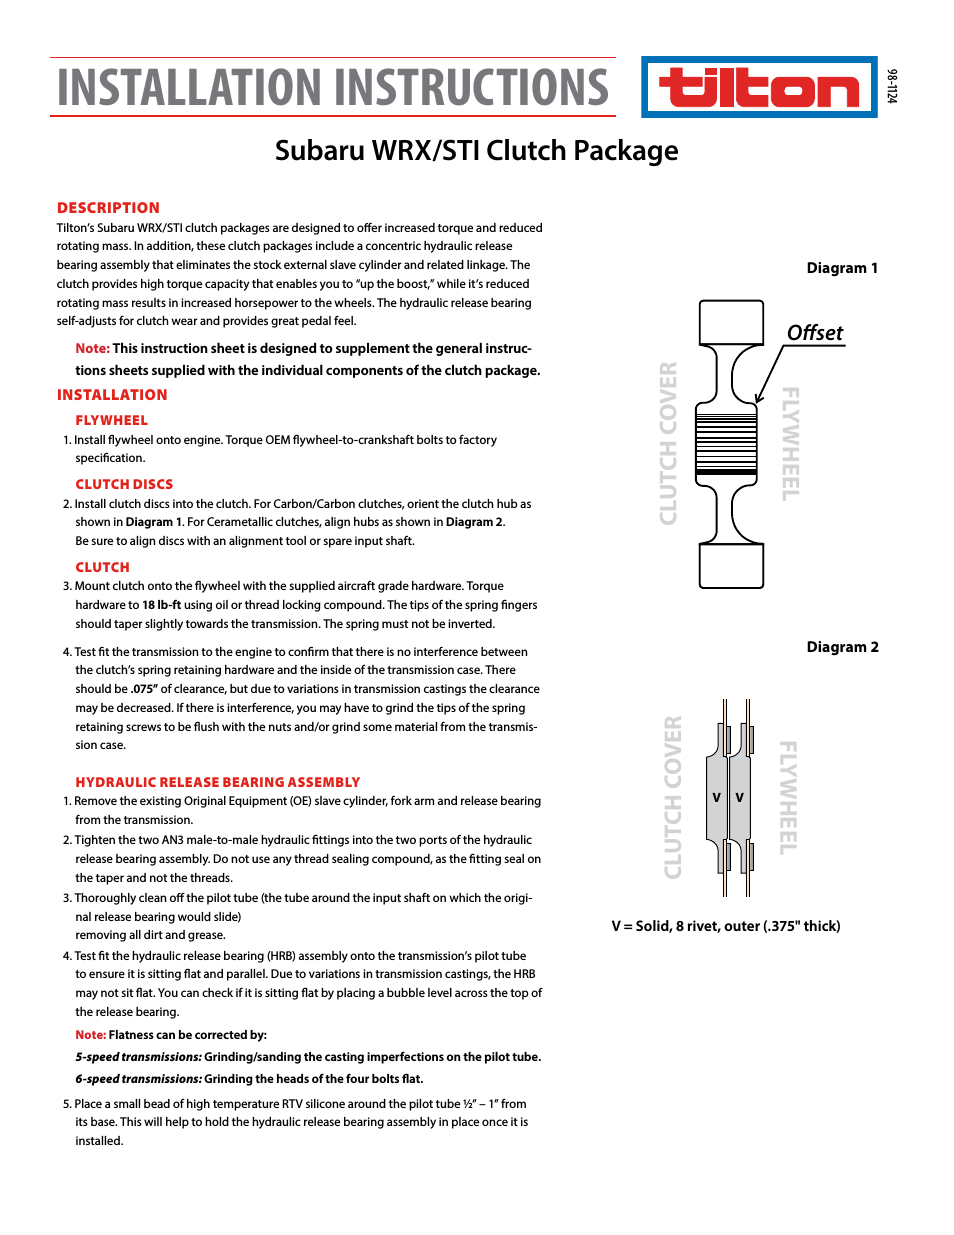 Subaru WRX-STI Package (98-1124)